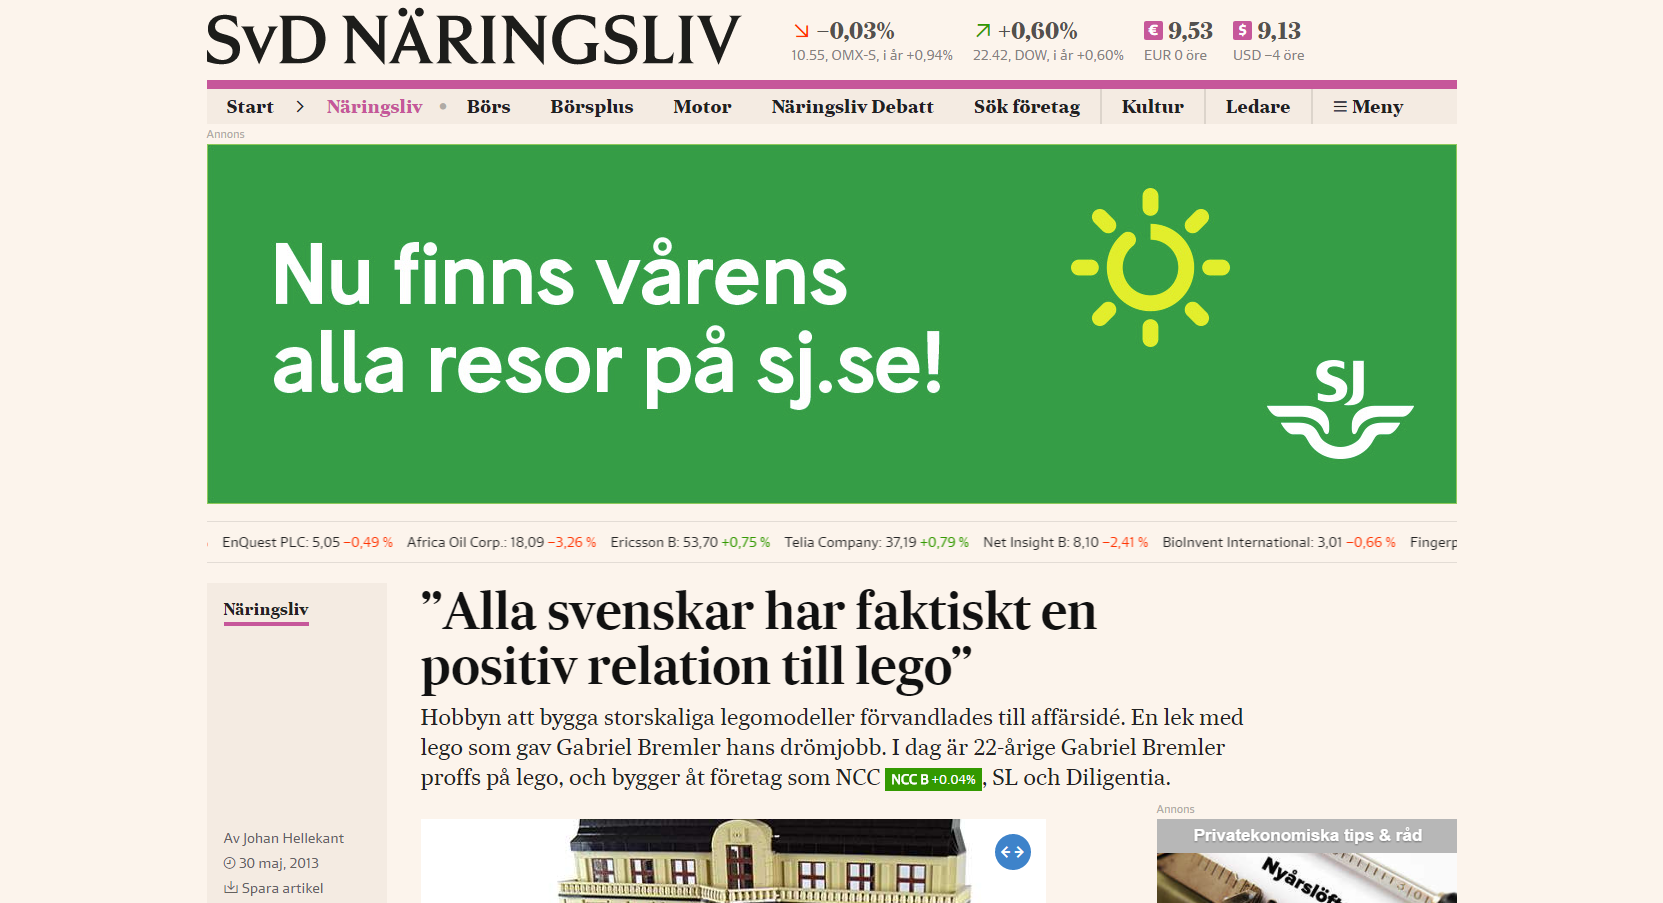 https://www.svd.se/alla-svenskar-har-faktiskt-en-positiv-relation-till-lego